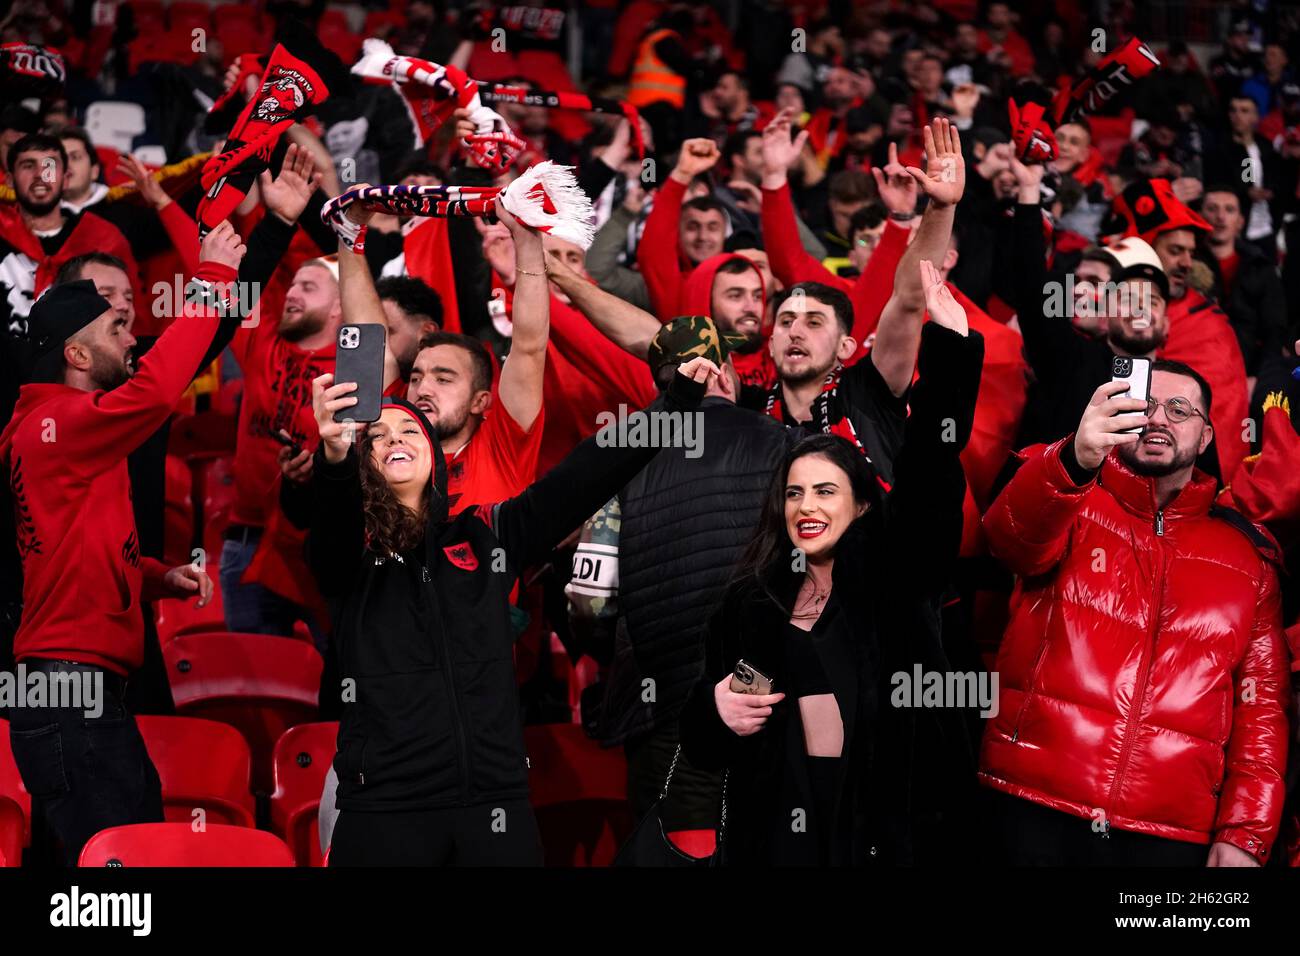 Albanien-Fans auf den Tribünen während des FIFA-WM-Qualifikationsspiel im Wembley-Stadion, London. Bilddatum: Freitag, 12. November 2021. Stockfoto